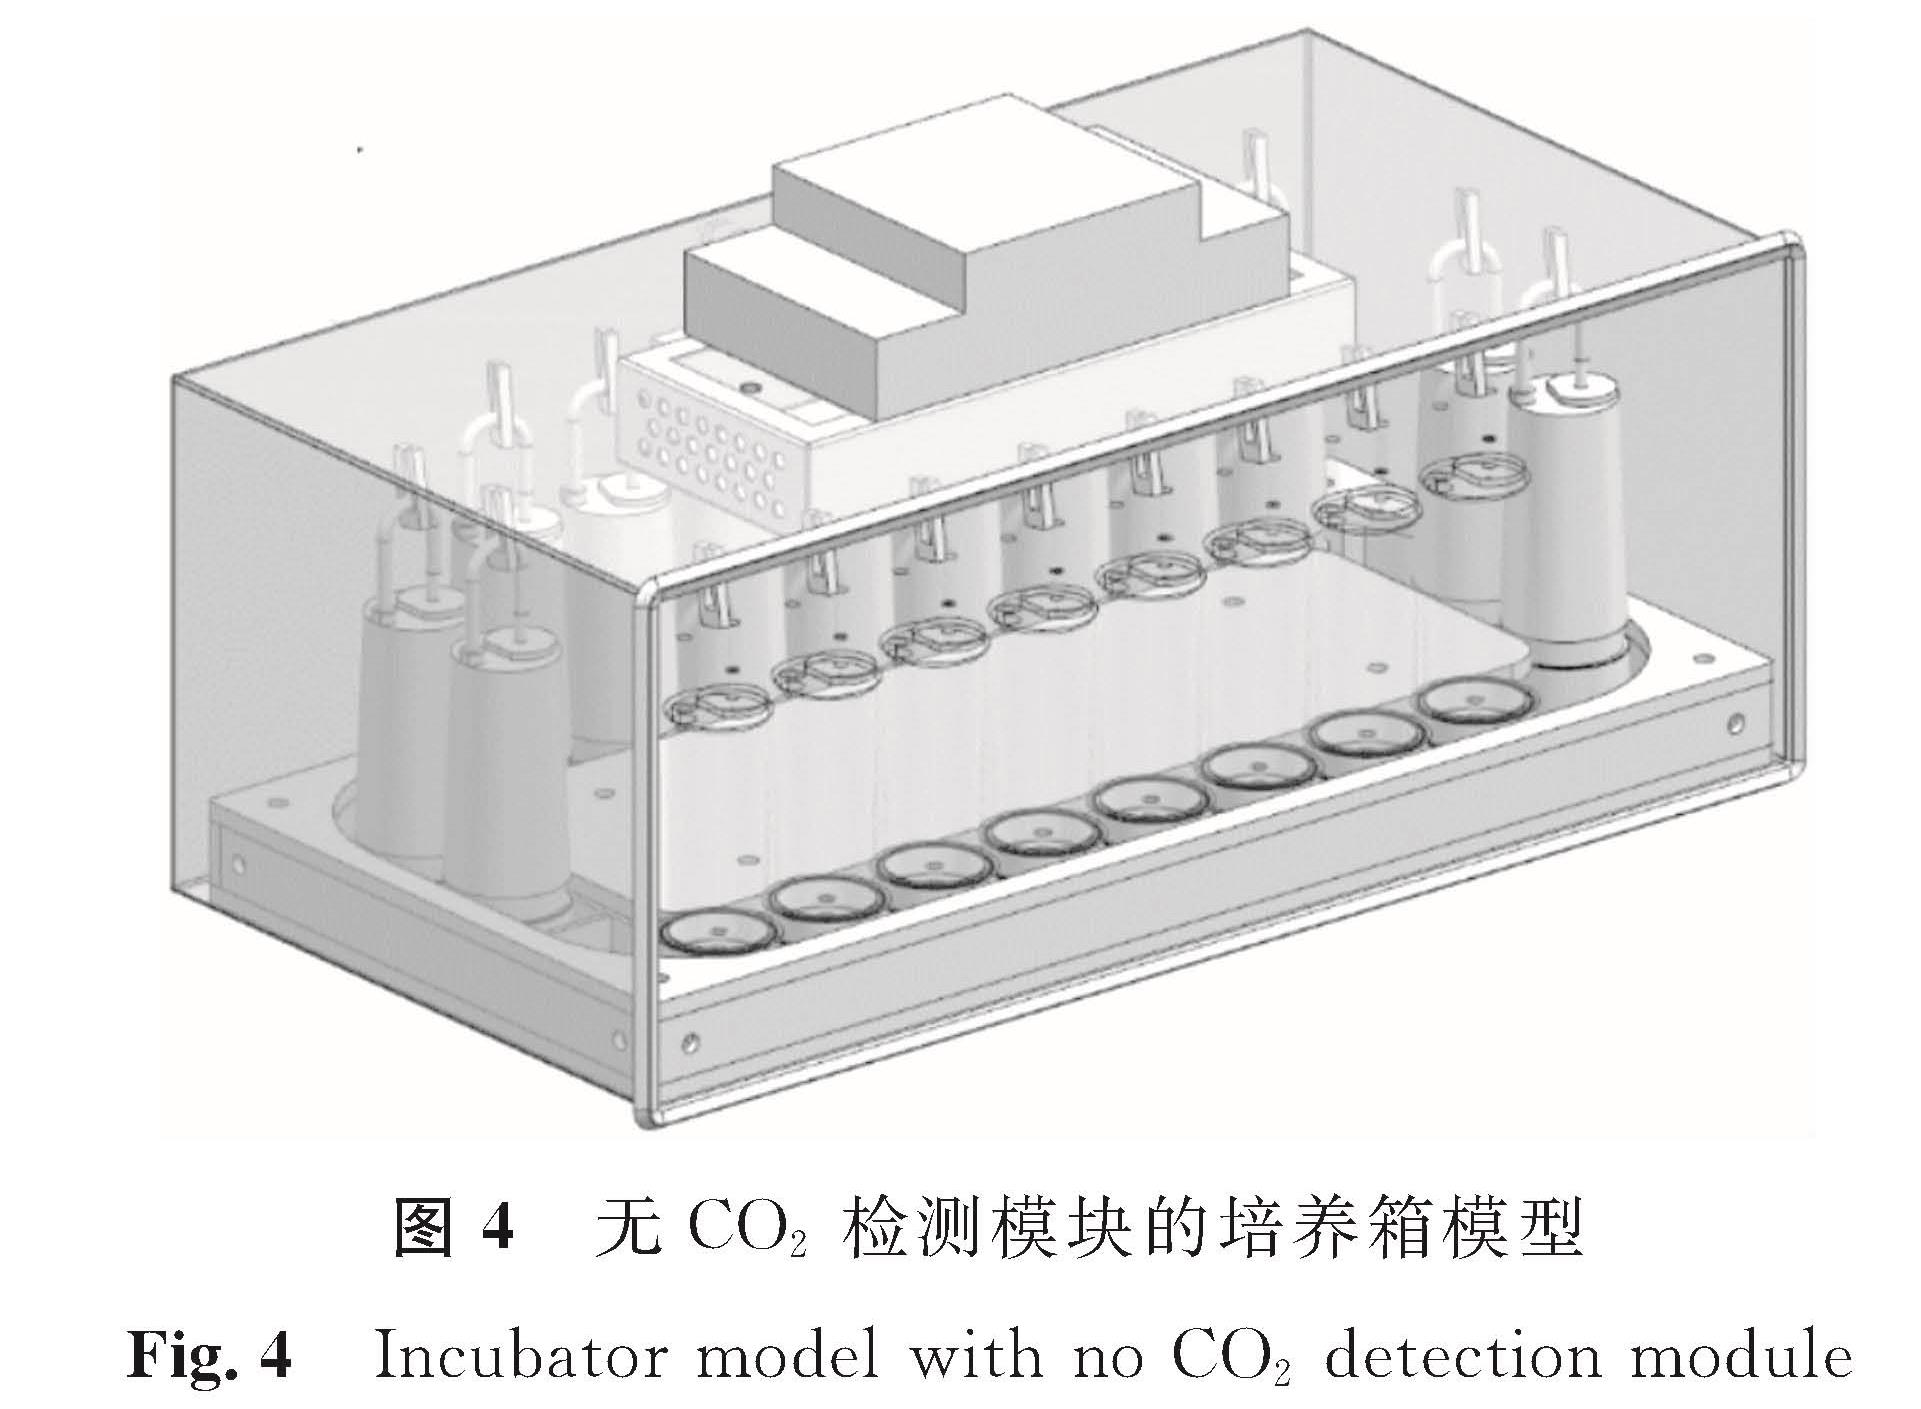 图4 无CO2检测模块的培养箱模型<br/>Fig.4 Incubator model with no CO2 detection module